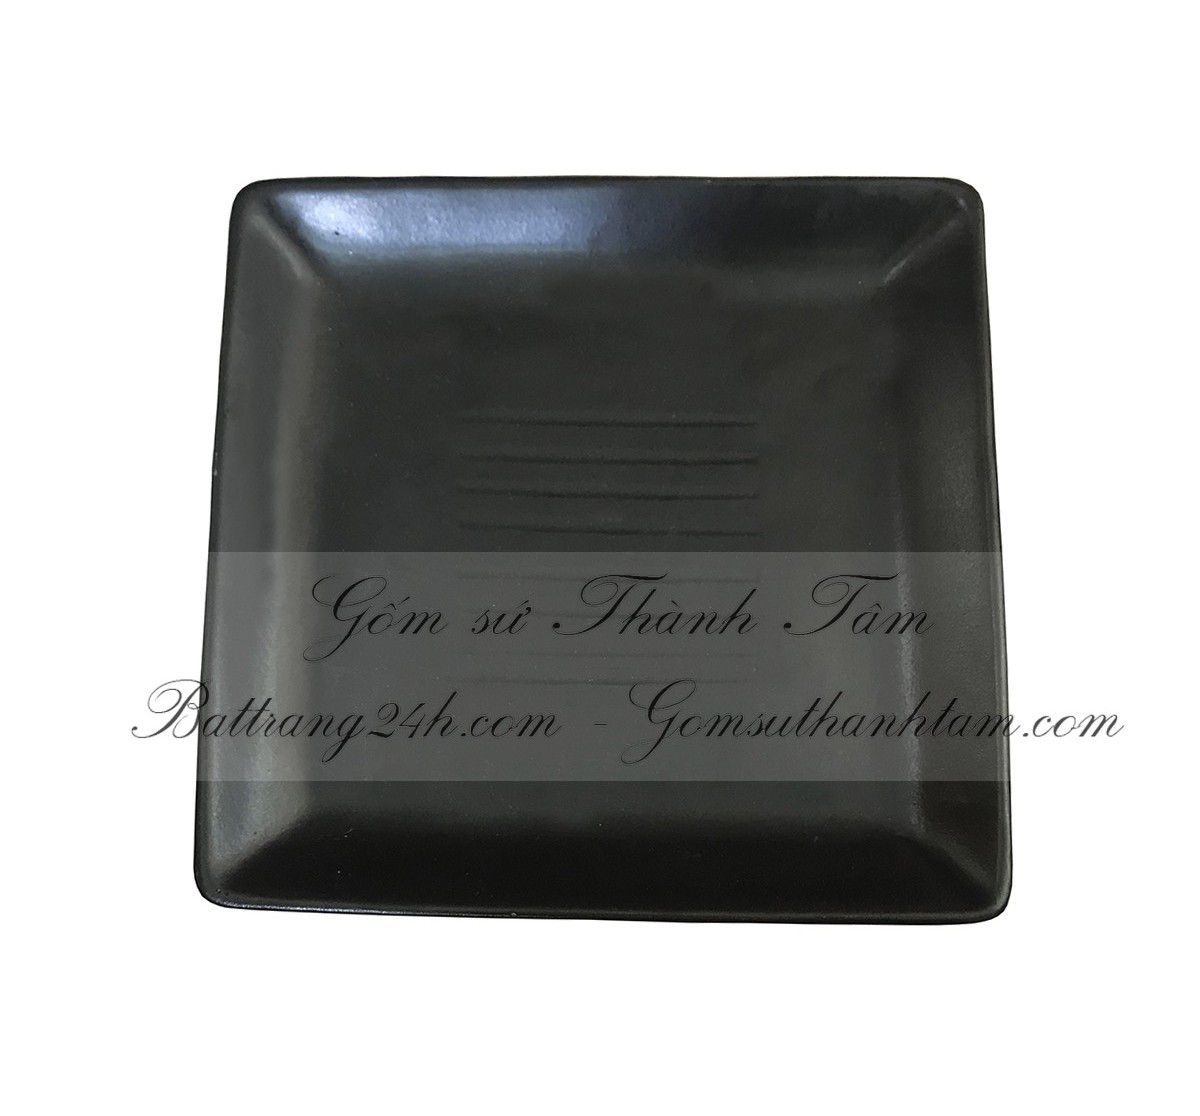 Đĩa sứ hình vuông gốm sứ Bát Tràng cao cấp, bộ bát đĩa men gốm đen trơn chất lượng